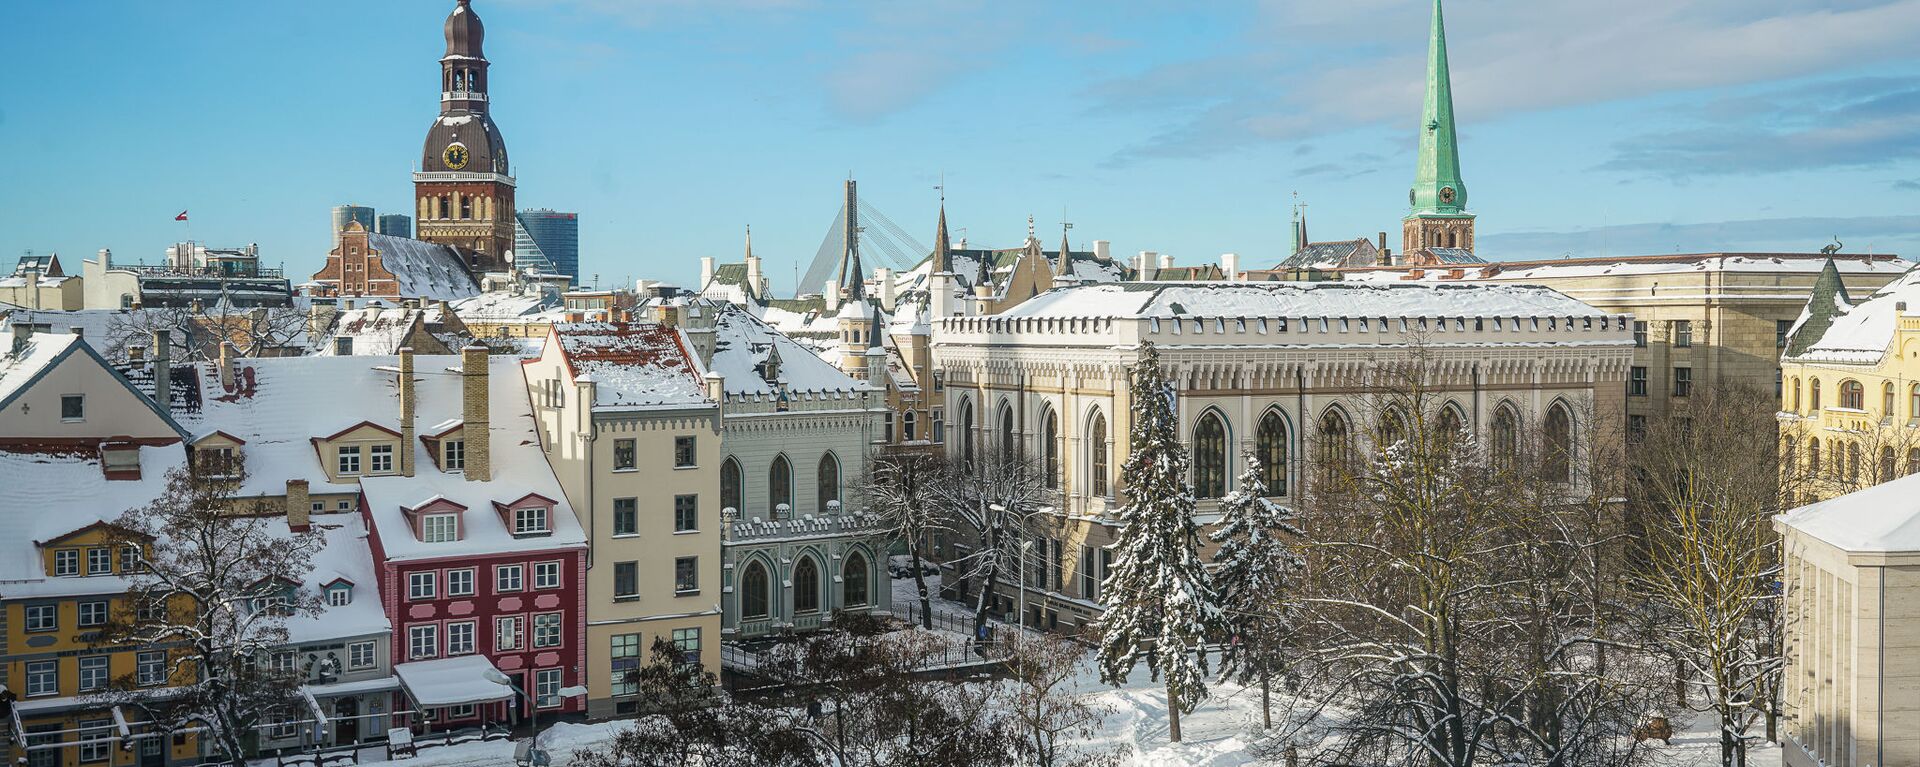 Вид на Старую Ригу и Домский собор зимой - Sputnik Латвия, 1920, 25.12.2021